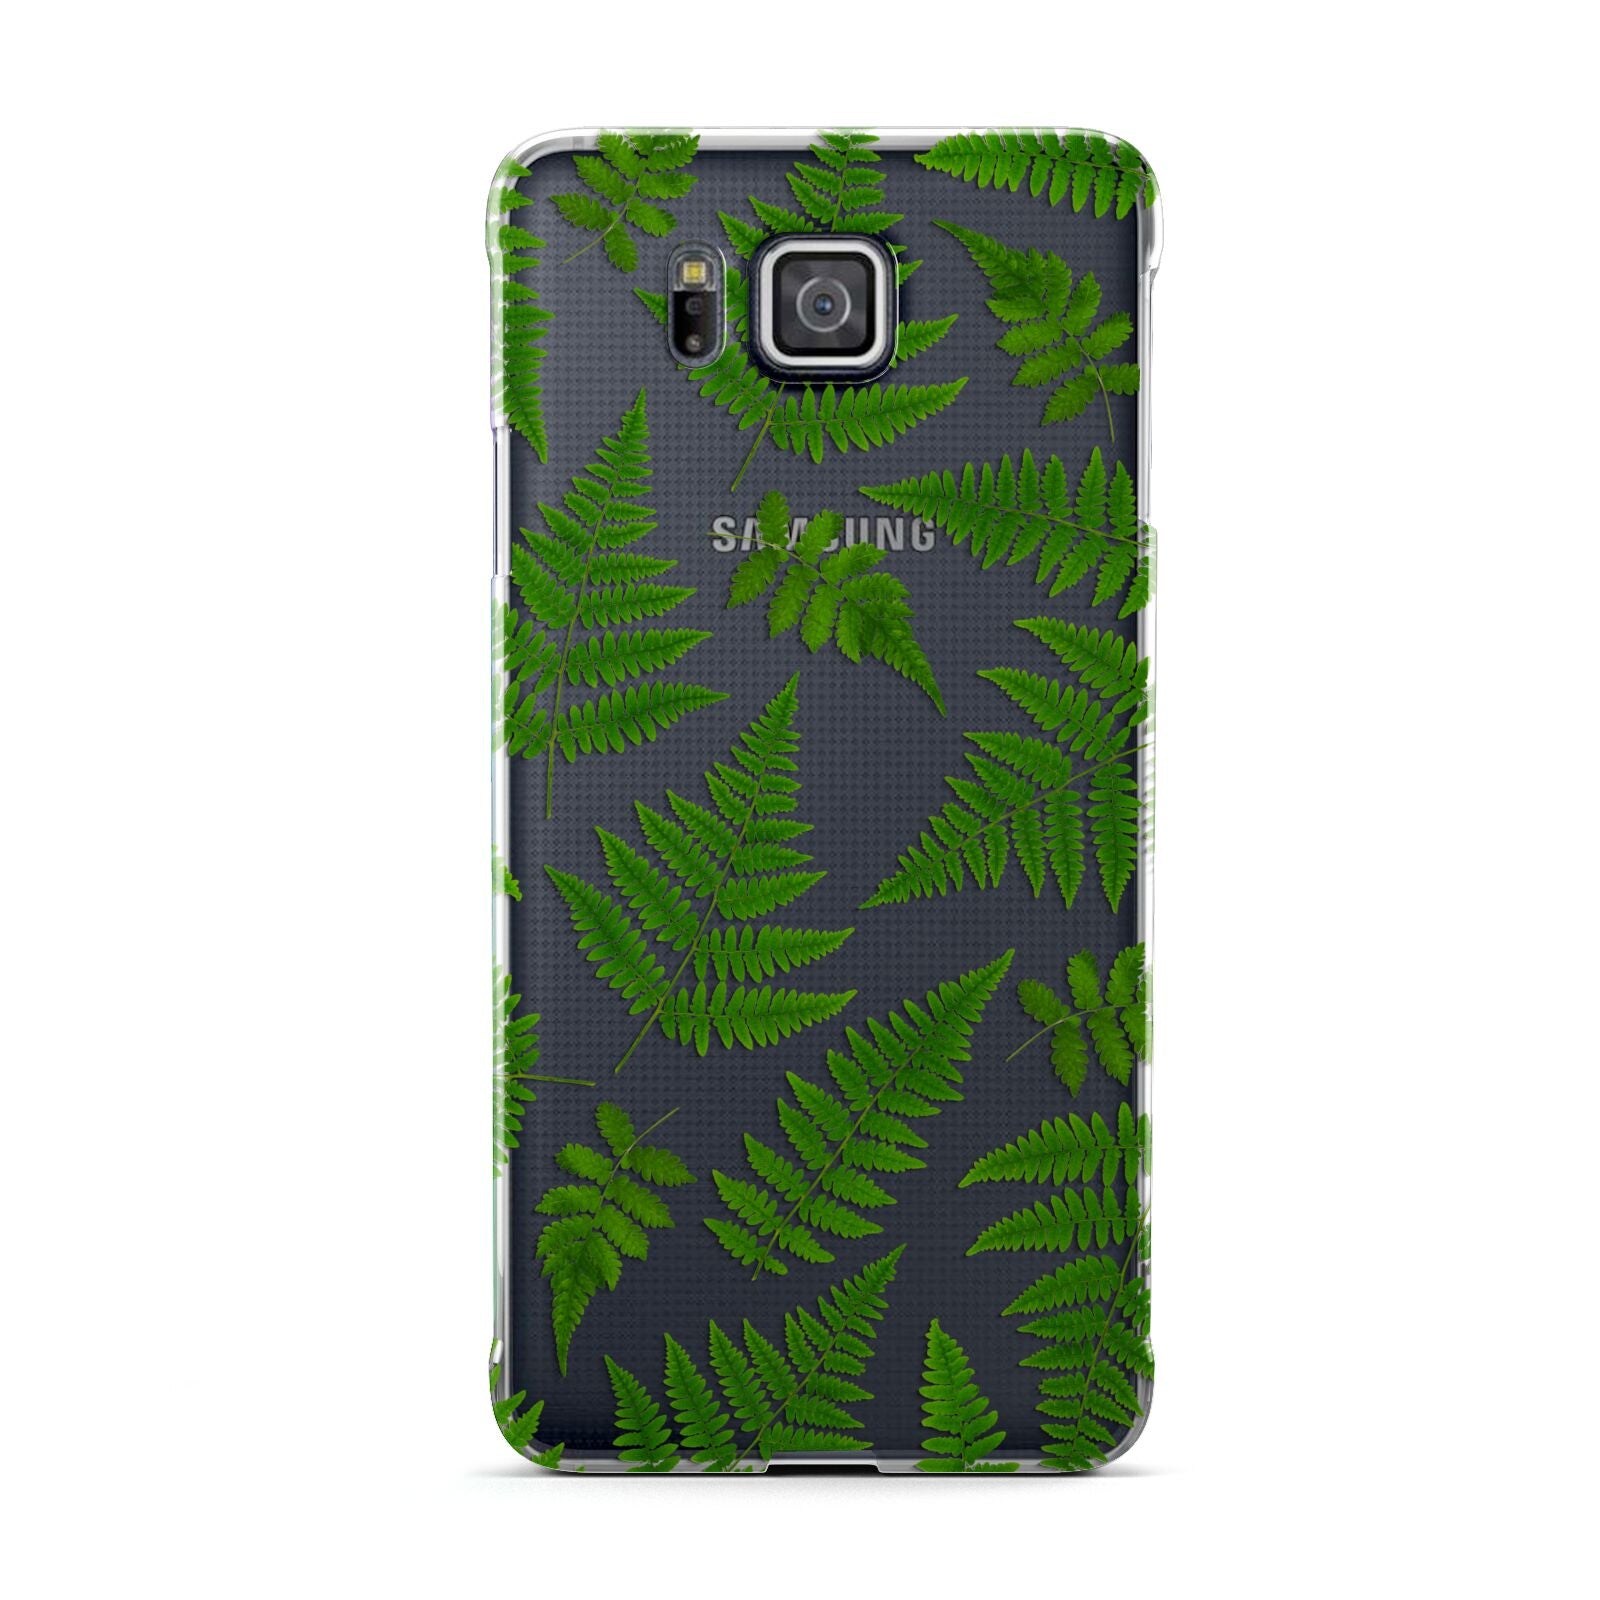 Fern Leaf Samsung Galaxy Alpha Case